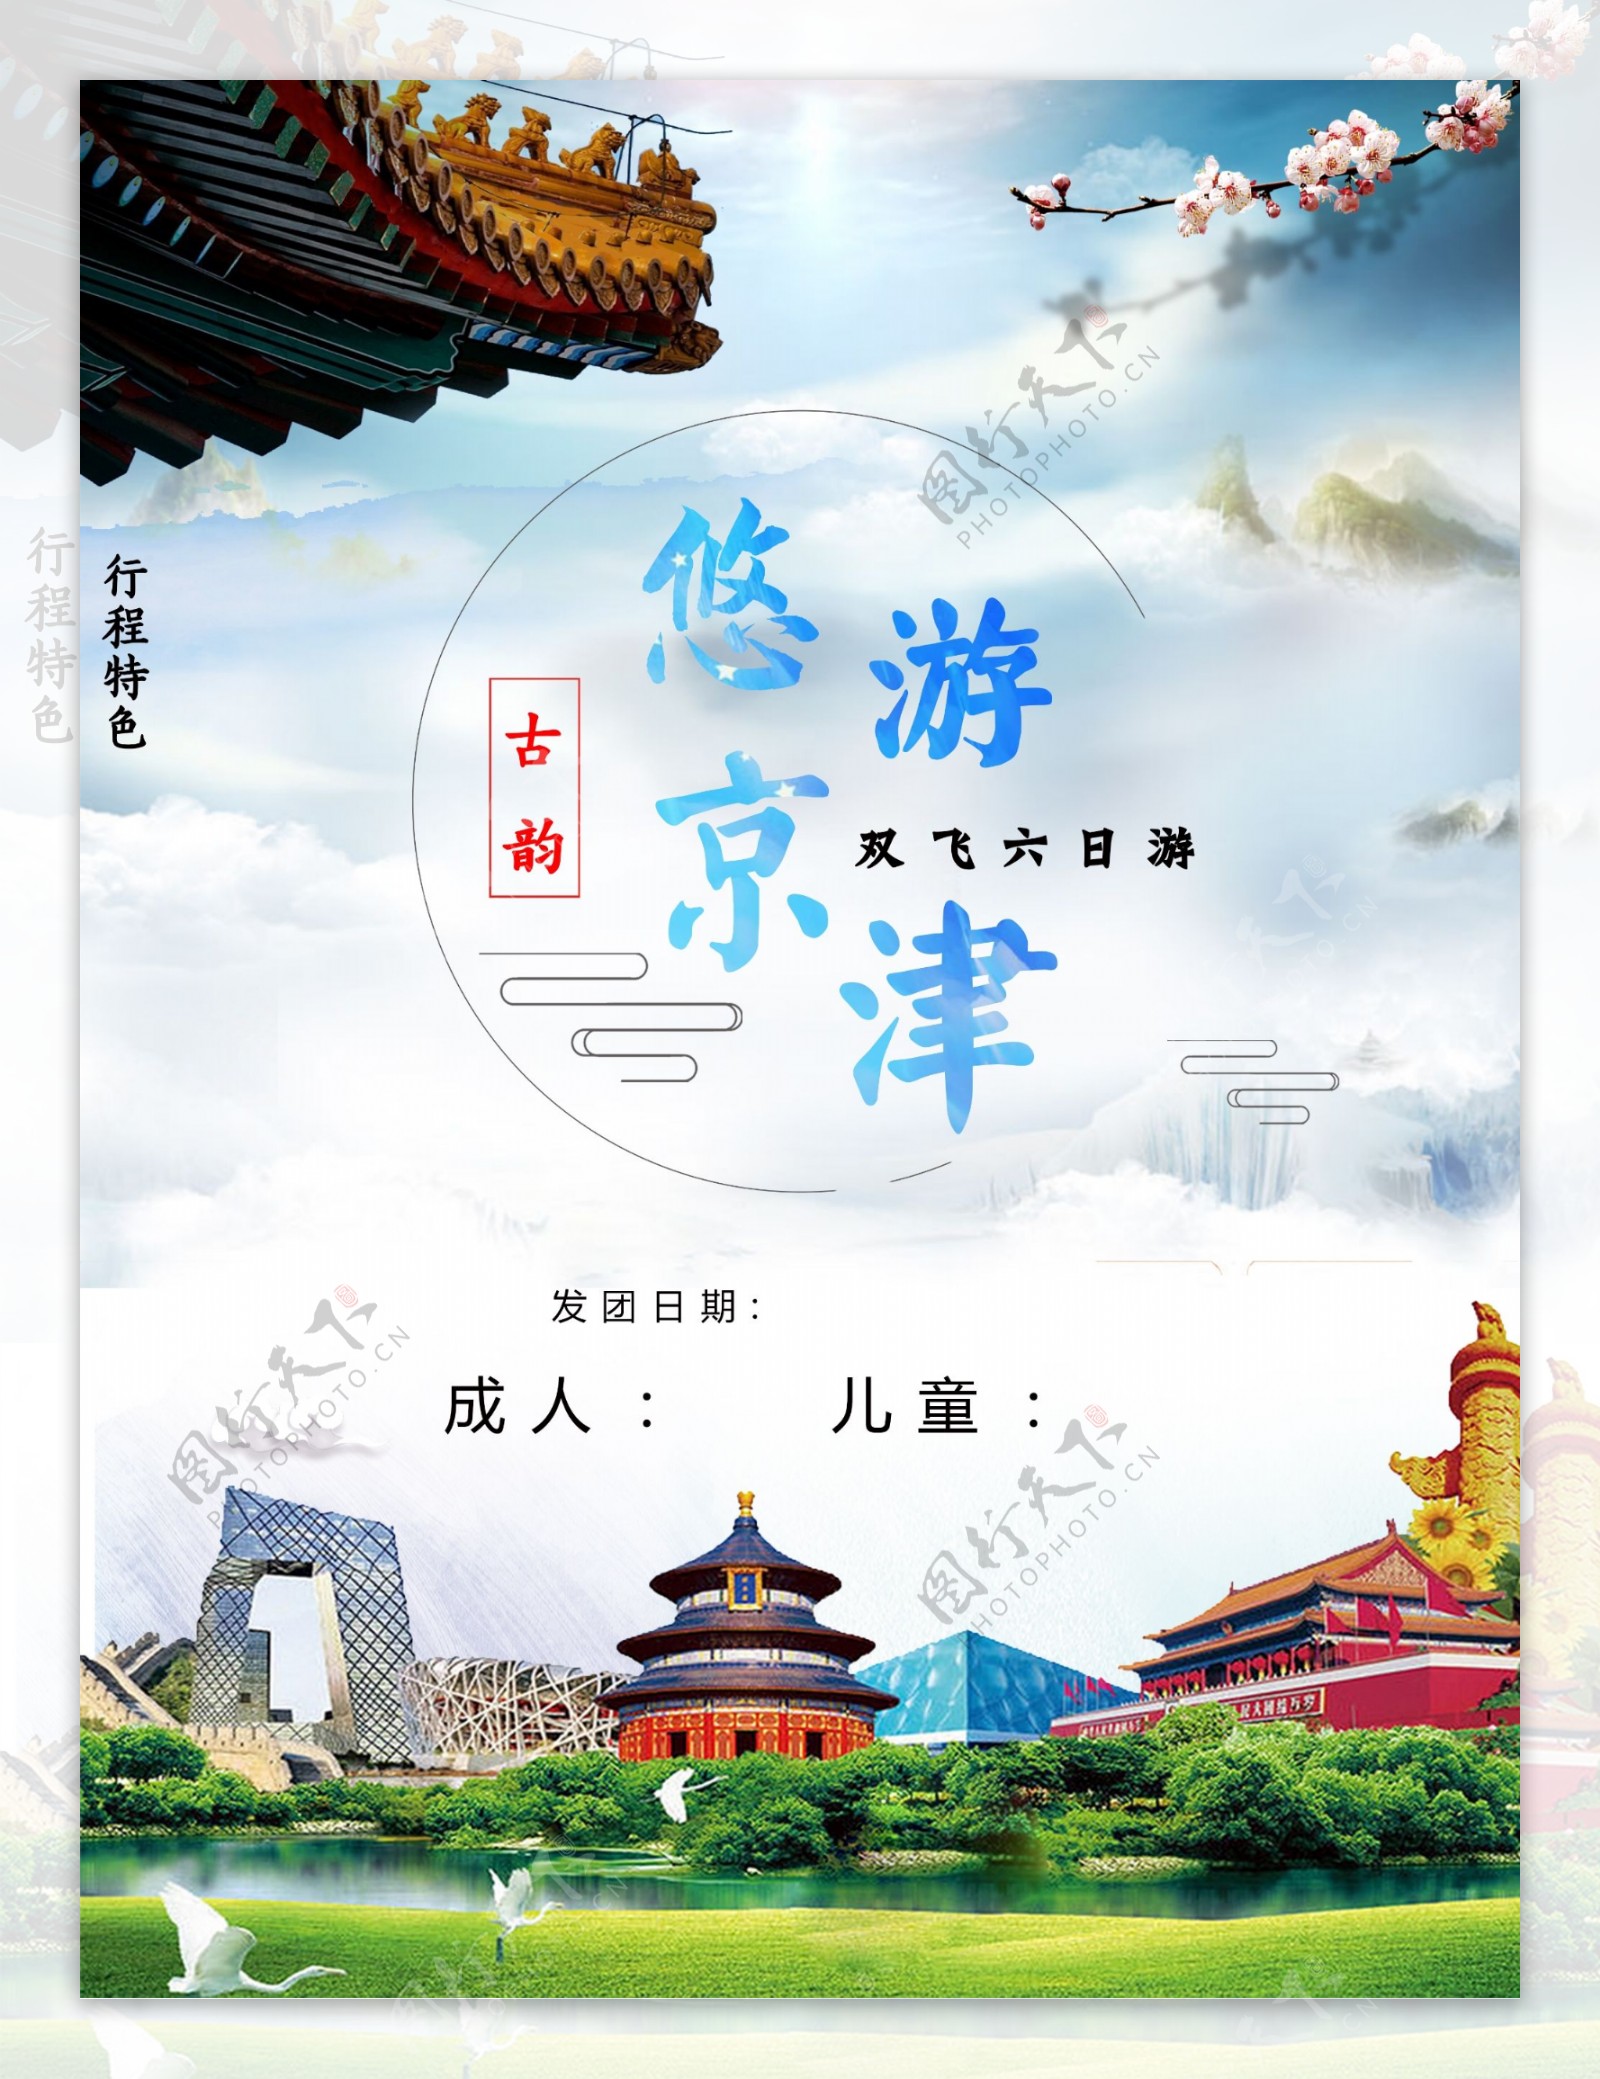 悠游京津旅游海报